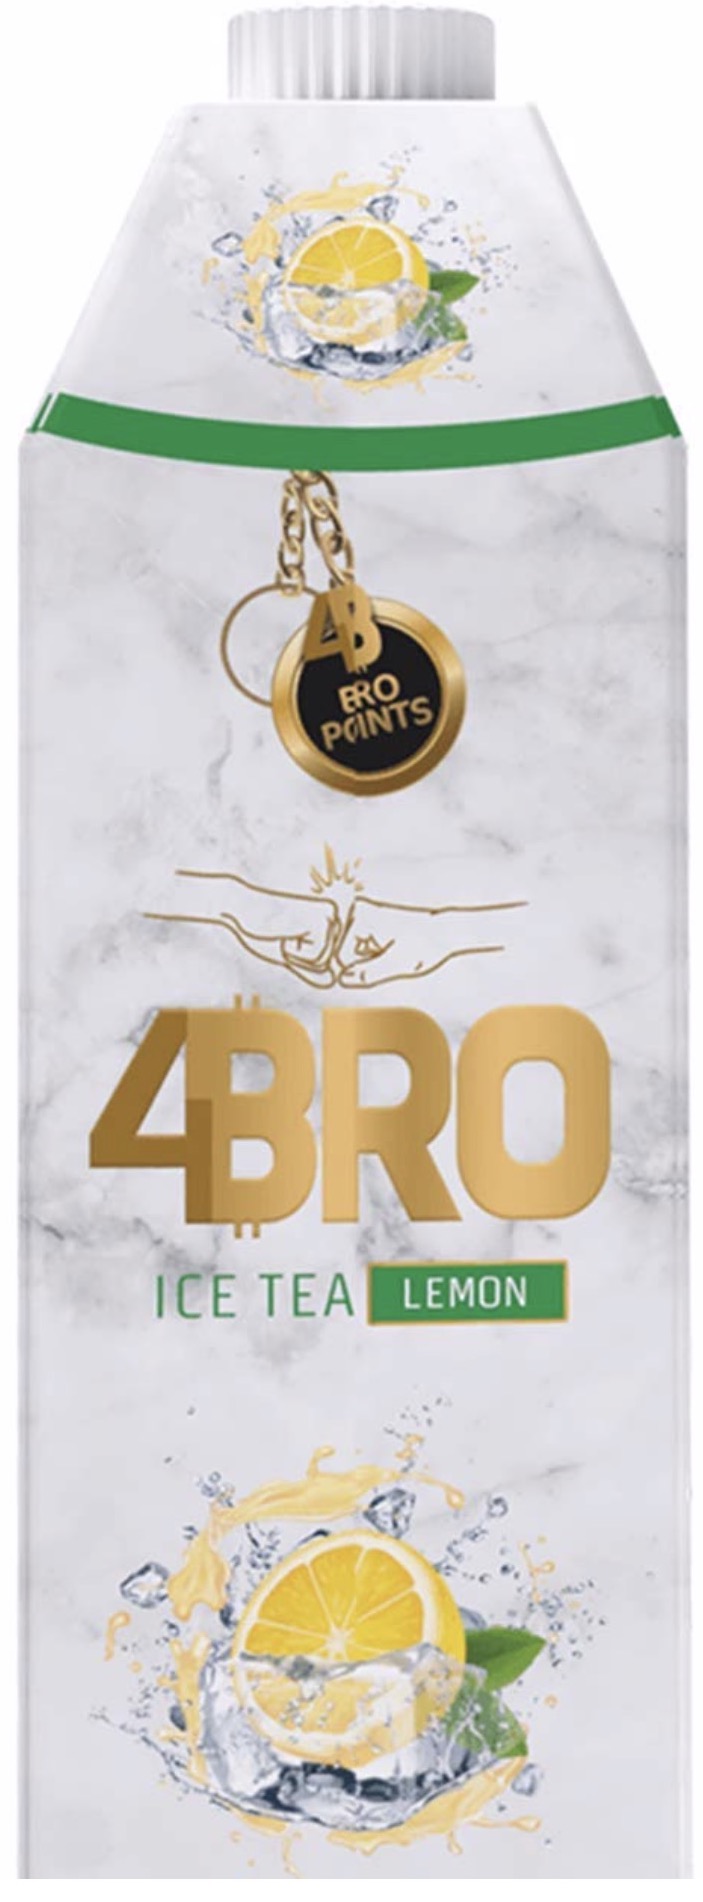 4Bro - Ice Tea Lemon 1,0L